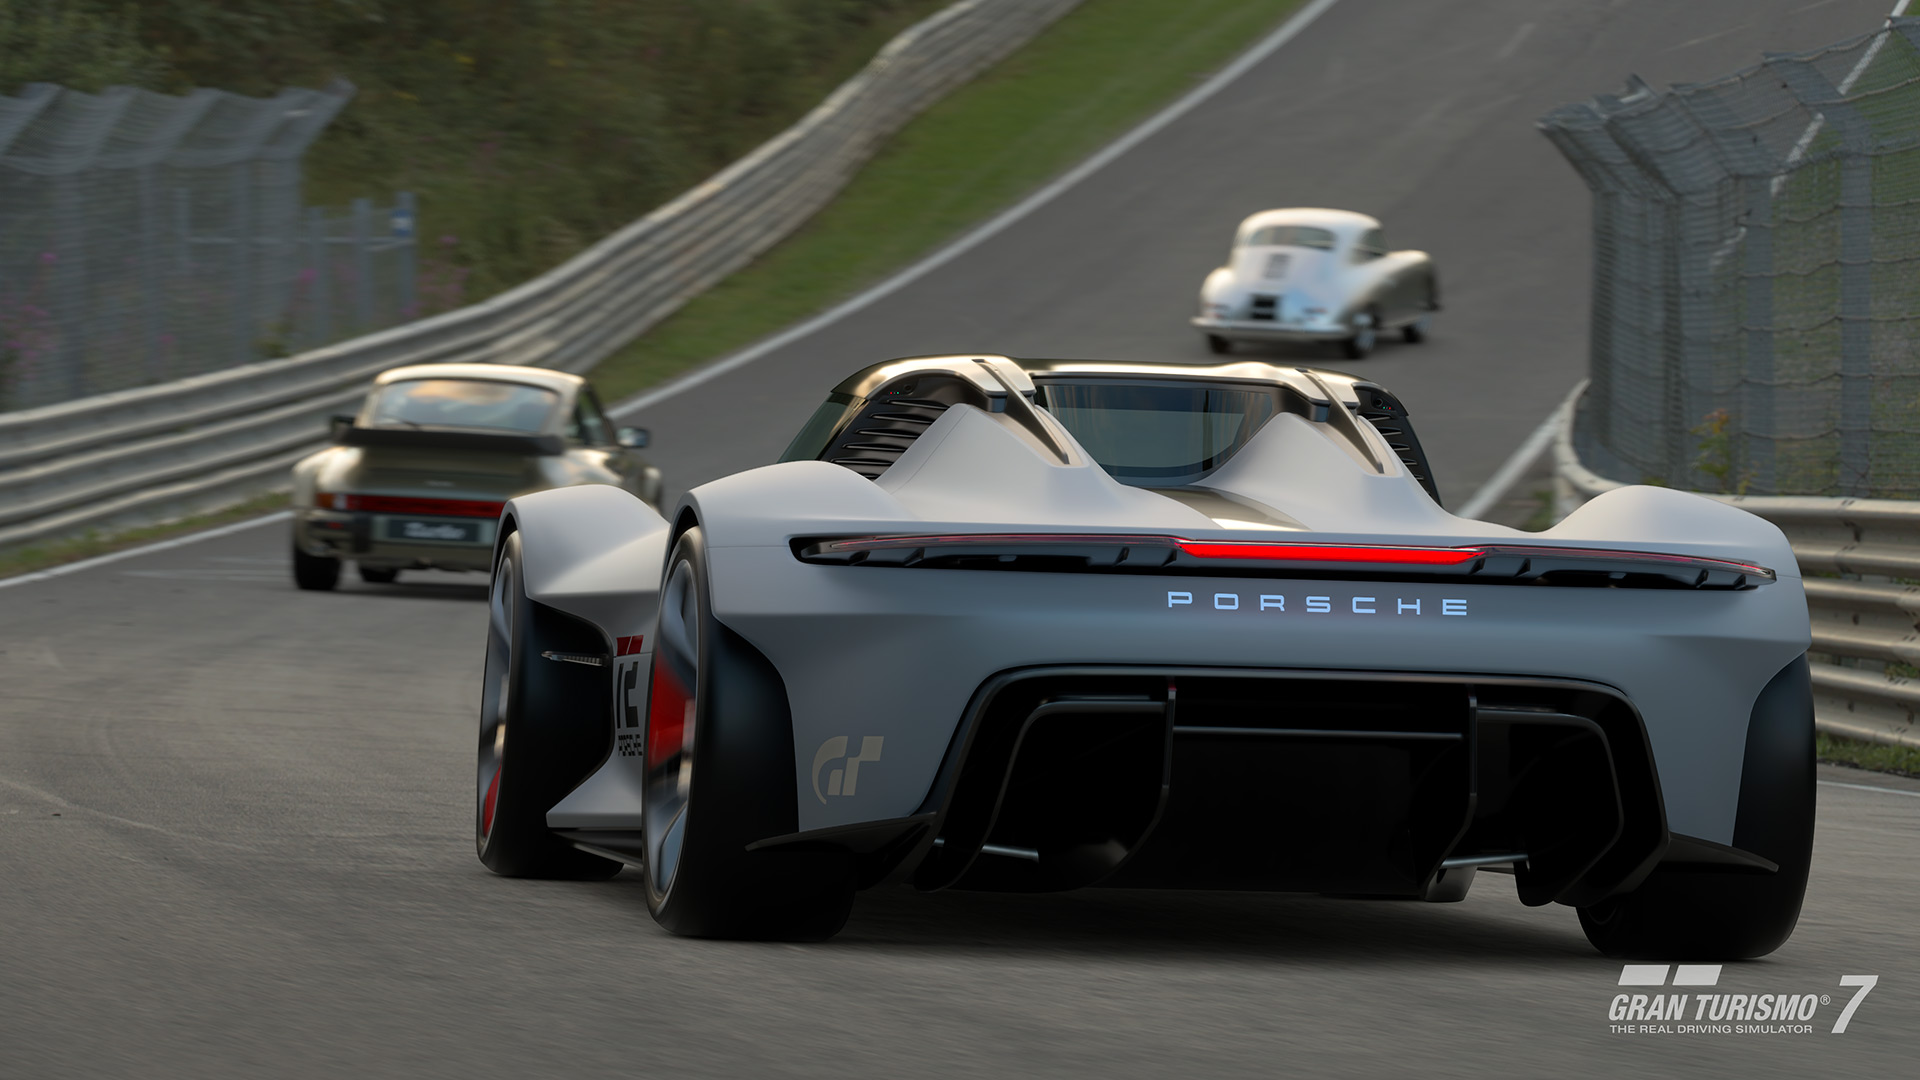 Twórcy Gran Turismo 7 opublikowali comiesięczną aktualizację gry z nowymi samochodami i trybami